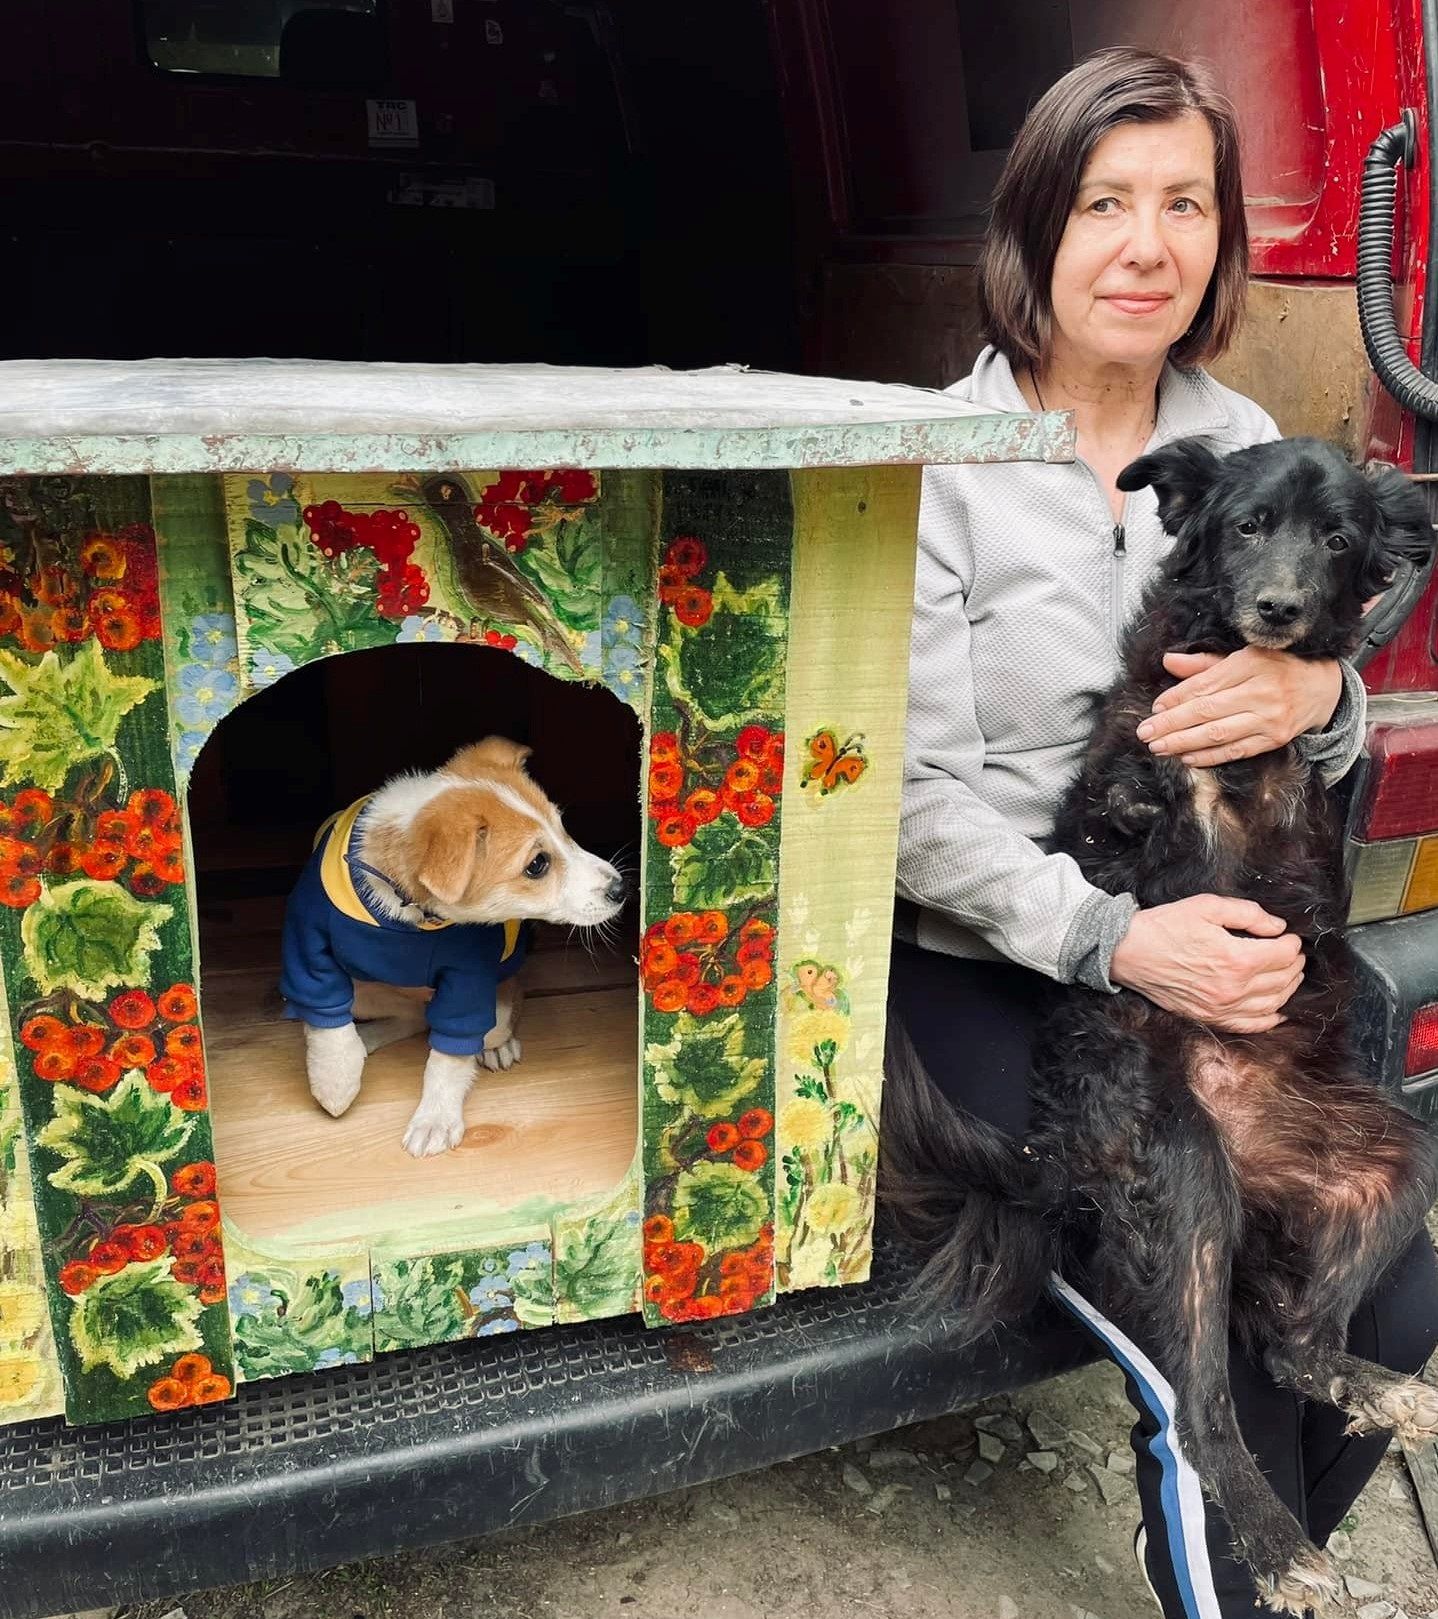 Інтер’єр для Бровка: художниця-самоучка розписала будку, щоб привернути увагу до бездомних тварин